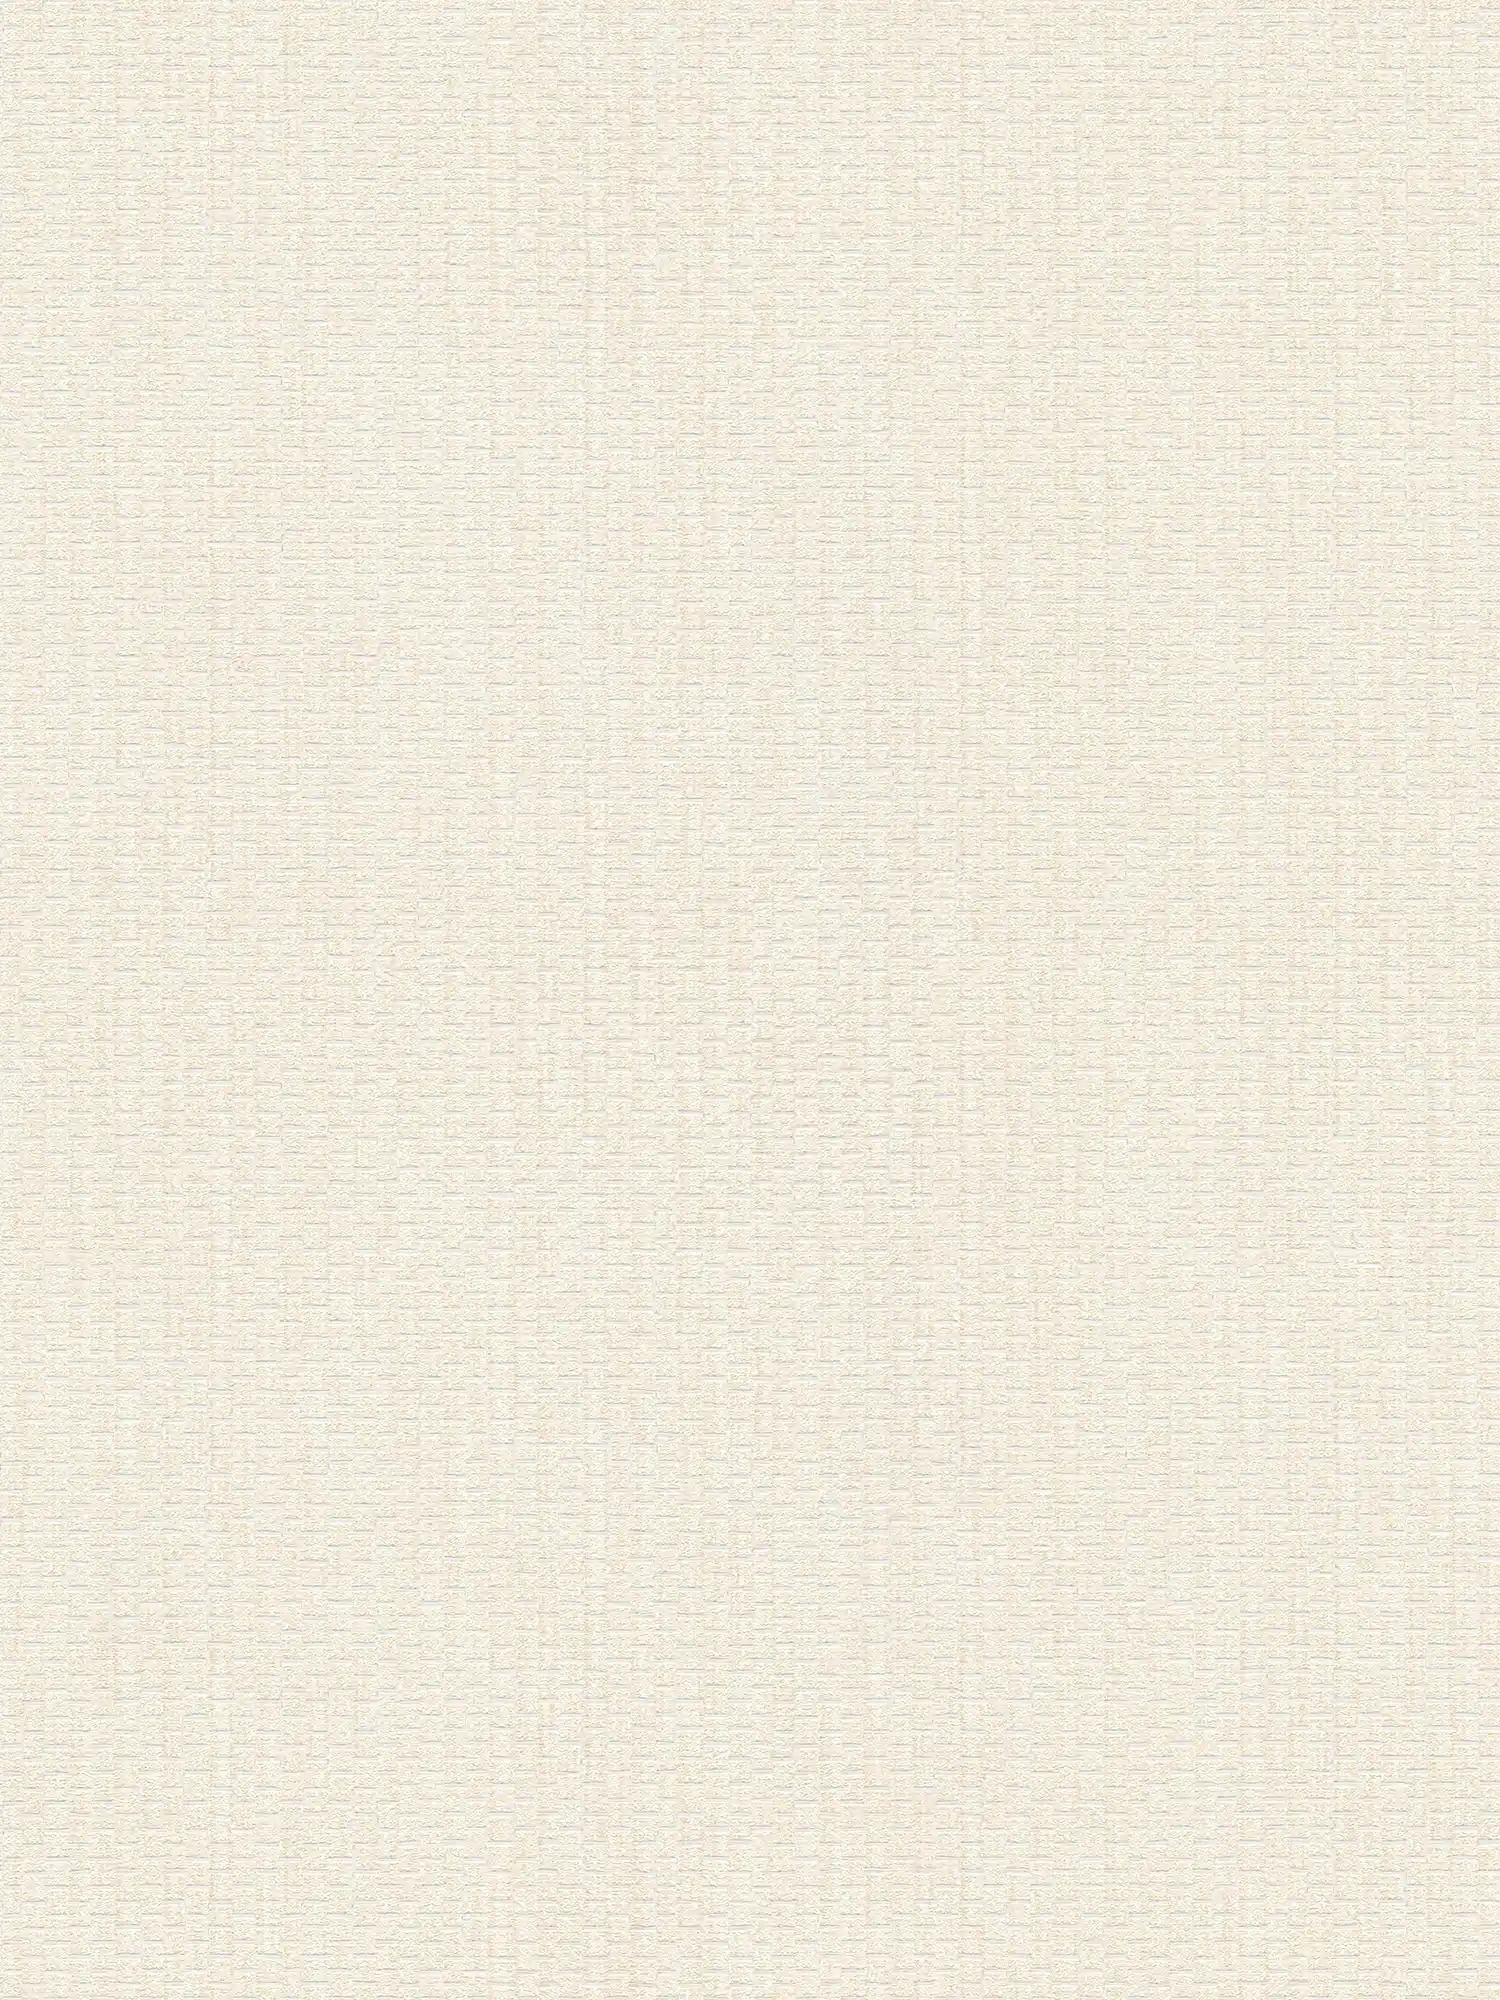 Papier peint avec design de tapis de raphia - crème, blanc
